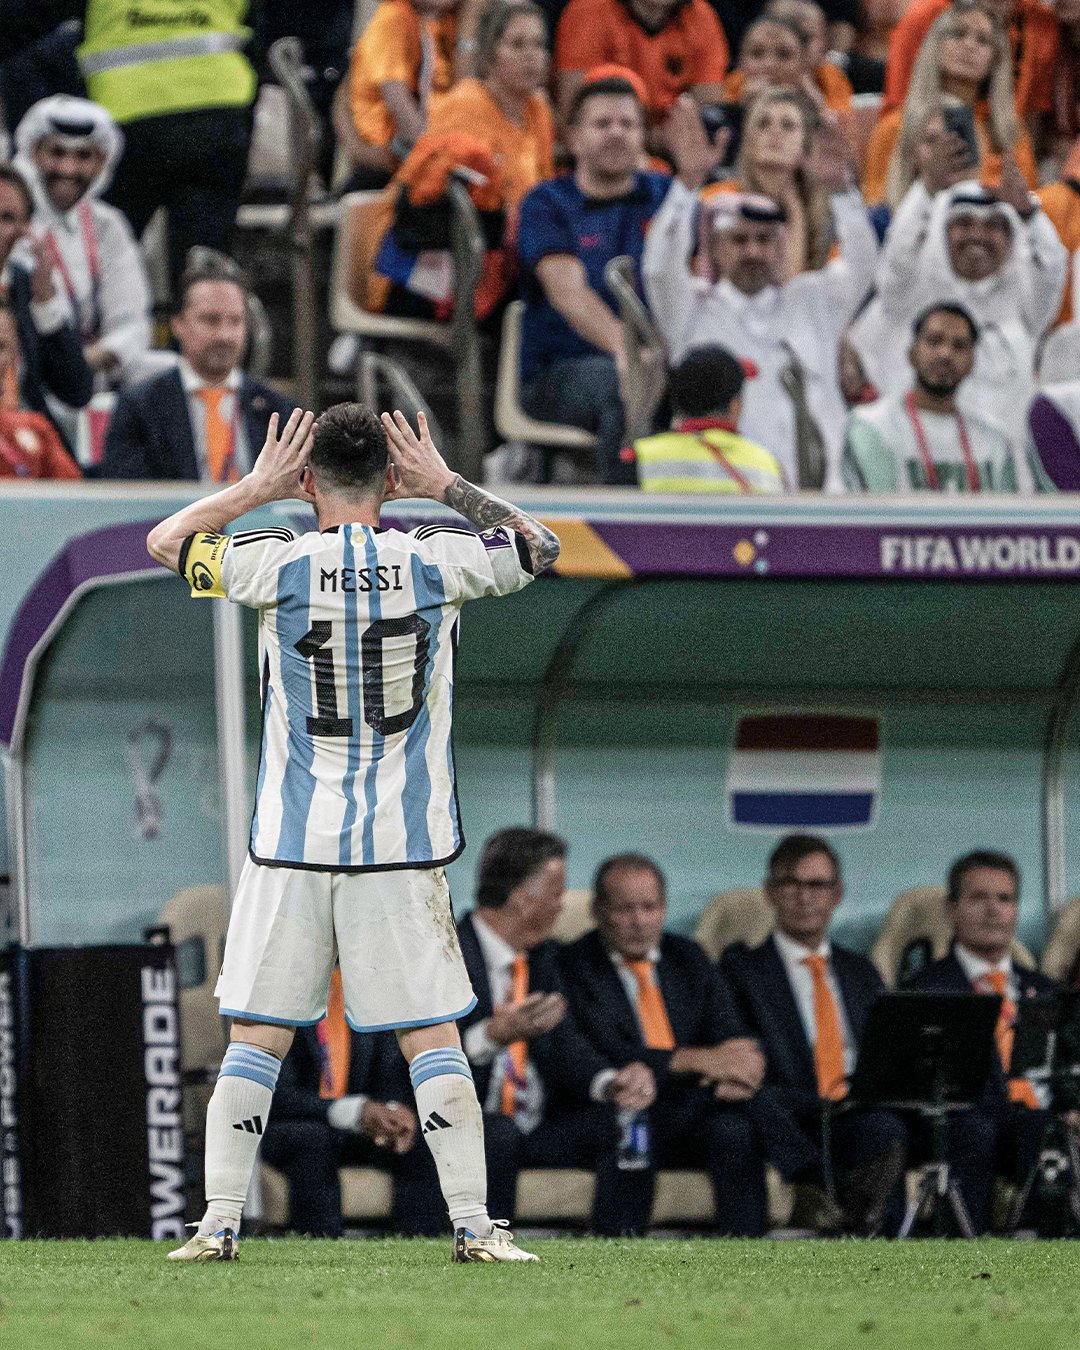 Sự thật đằng sau màn ăn mừng của Lionel Messi trước tuyển Hà Lan